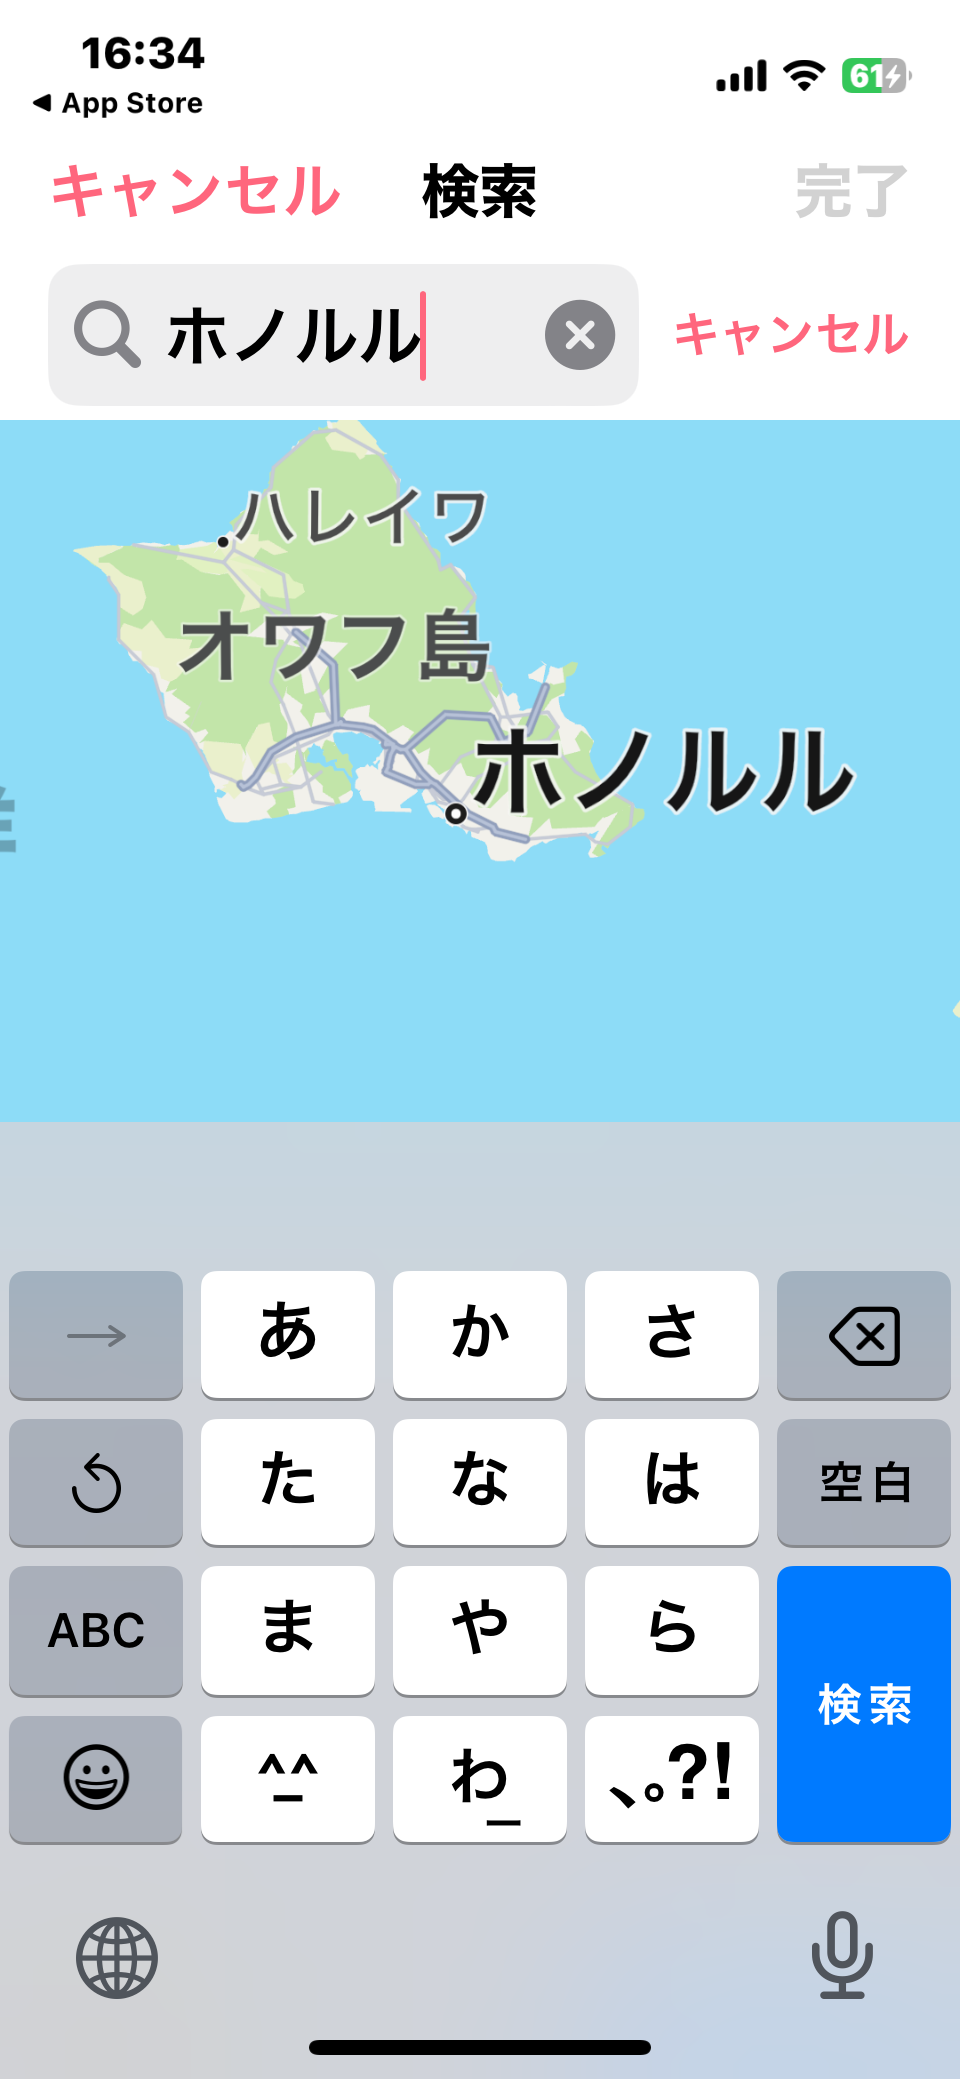 ハワイとの時差は19時間｜現在時刻の計算方法と日本からの飛行時間